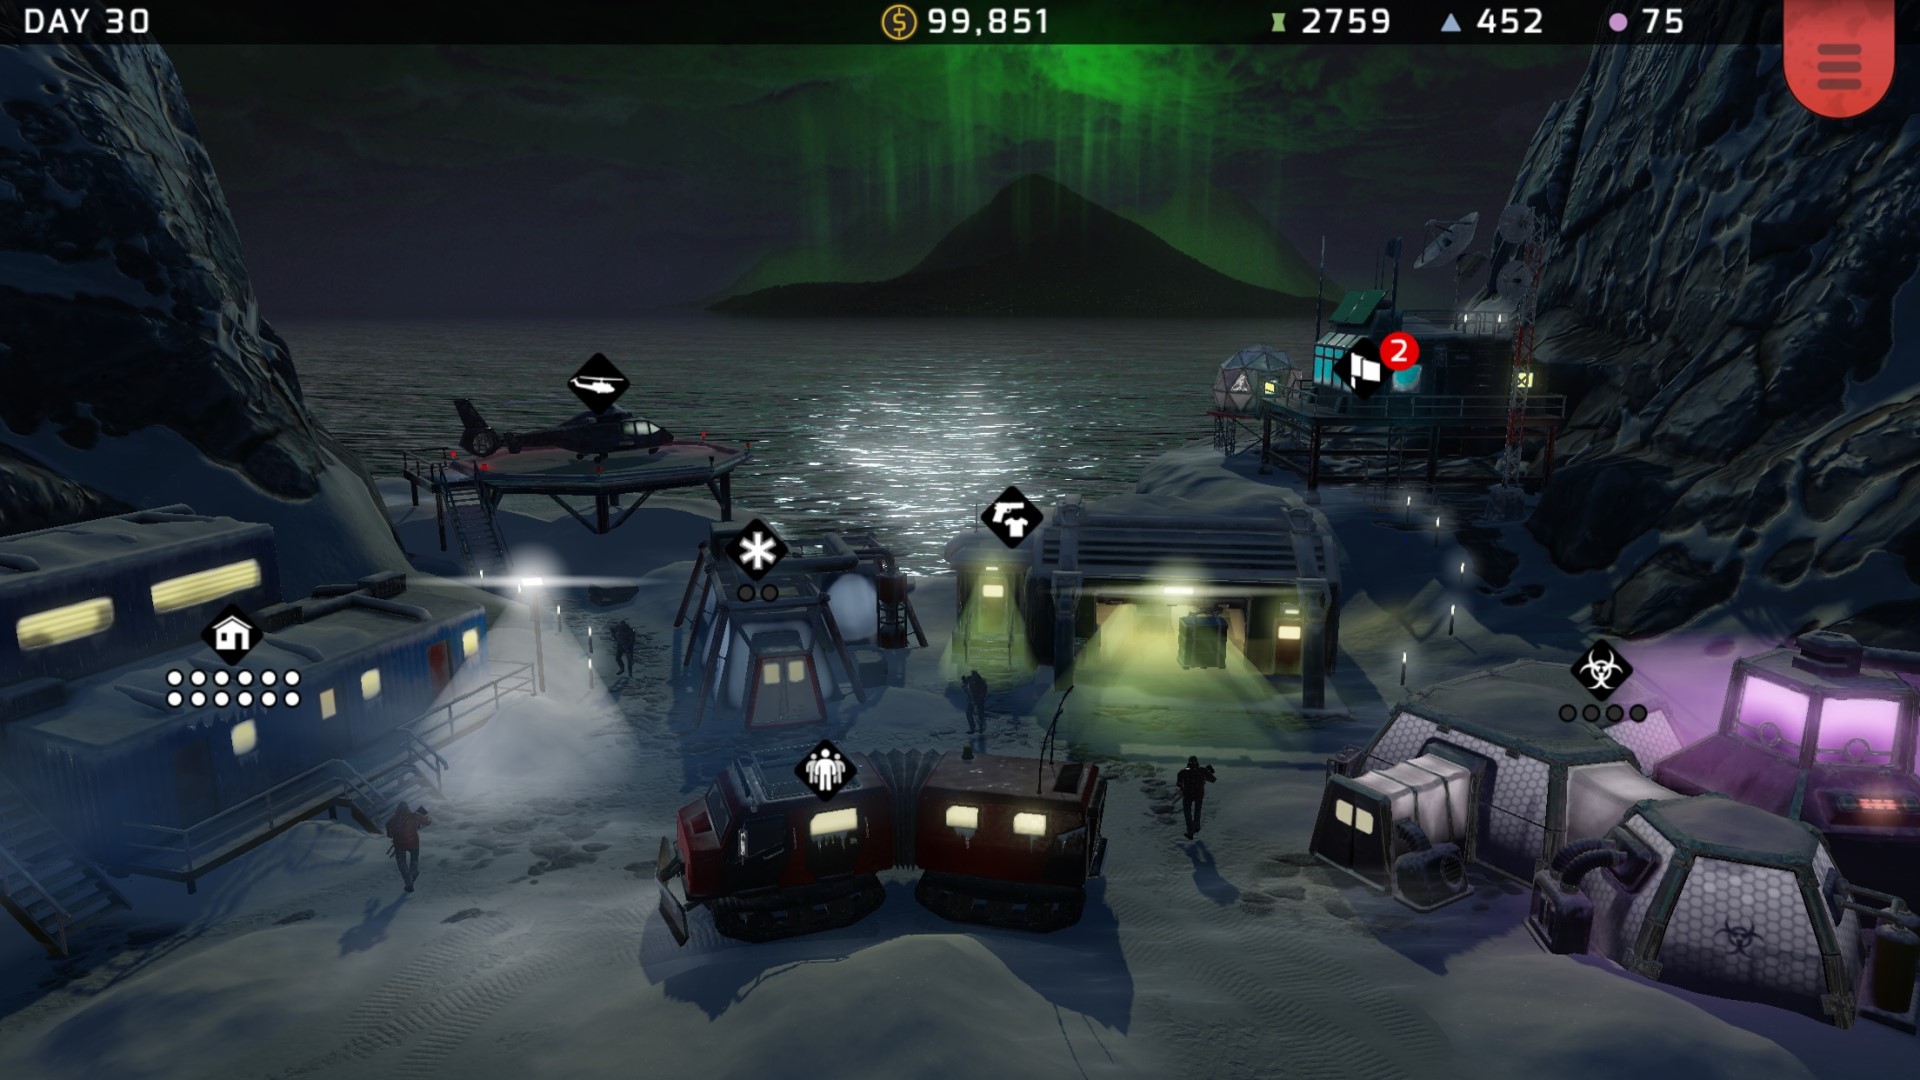 เกมกลยุทธ์มือถือที่ดีที่สุด: กลยุทธ์ Xenowerk ภาพแสดงให้เห็นถึงการเลือกยานพาหนะทางทหารที่นั่งอยู่ข้างมหาสมุทรในเวลากลางคืน